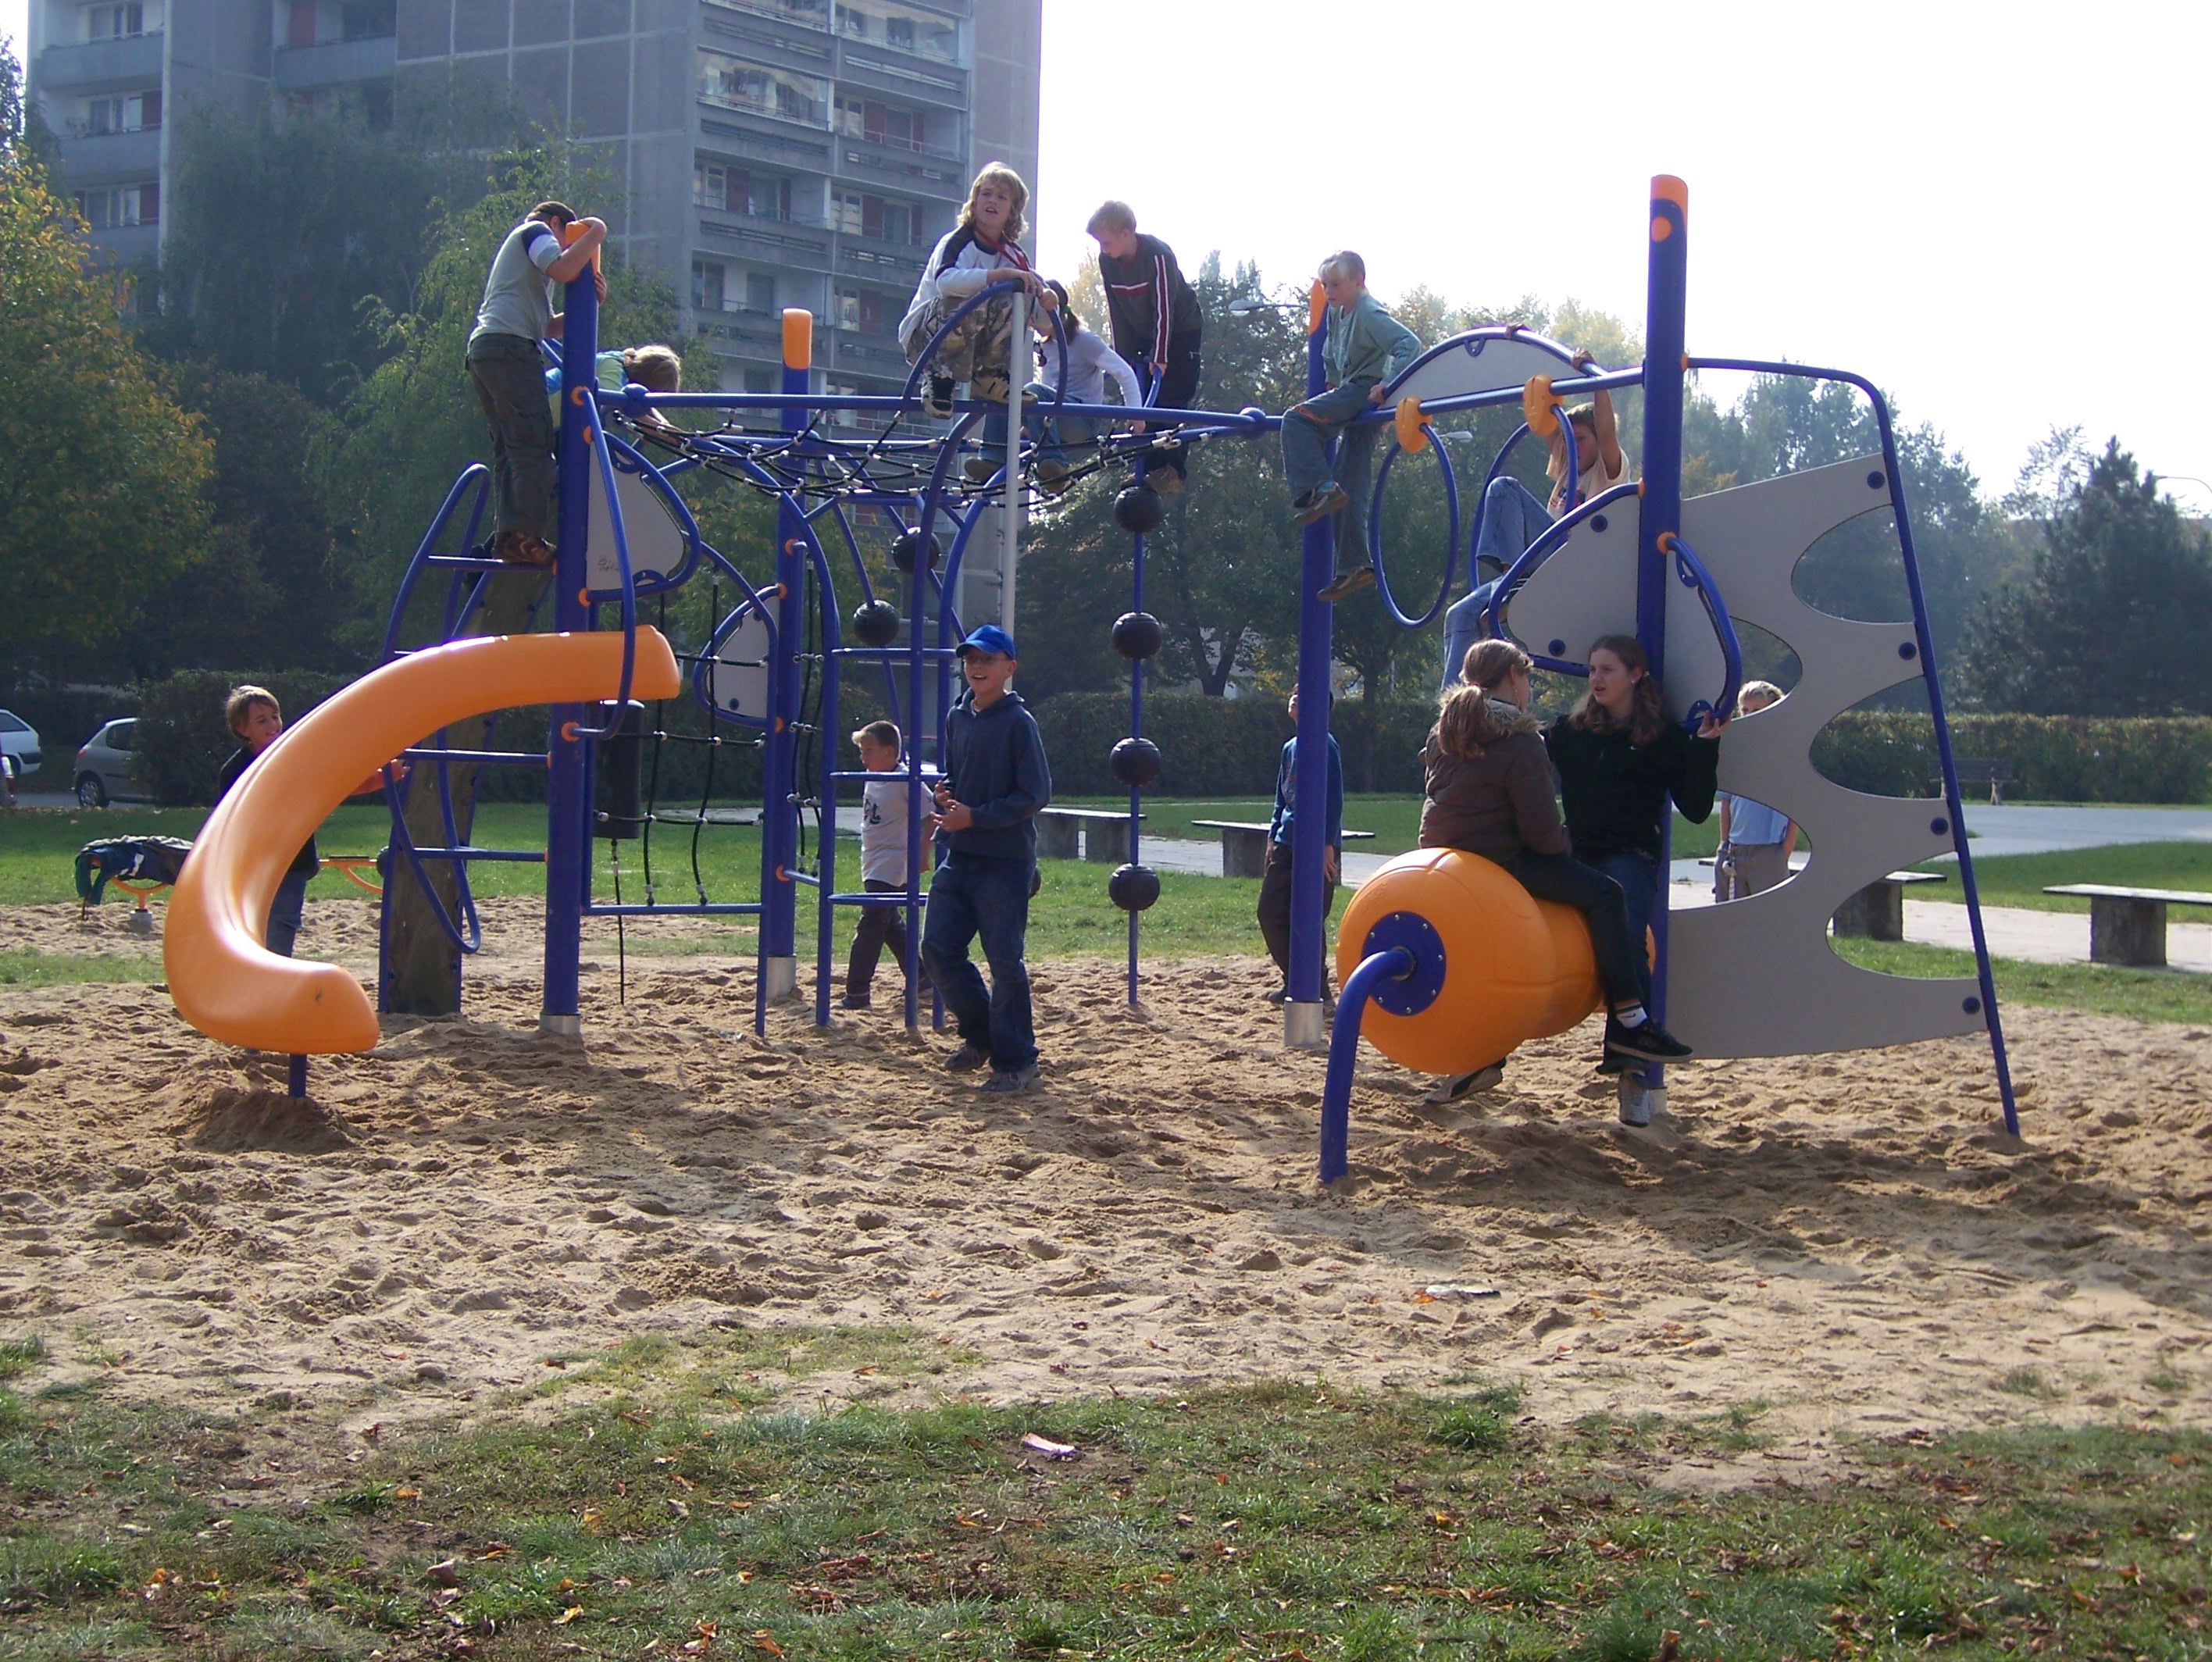 Vybavení dětského hřiště, parků pro volný čas, městský mobiliář.